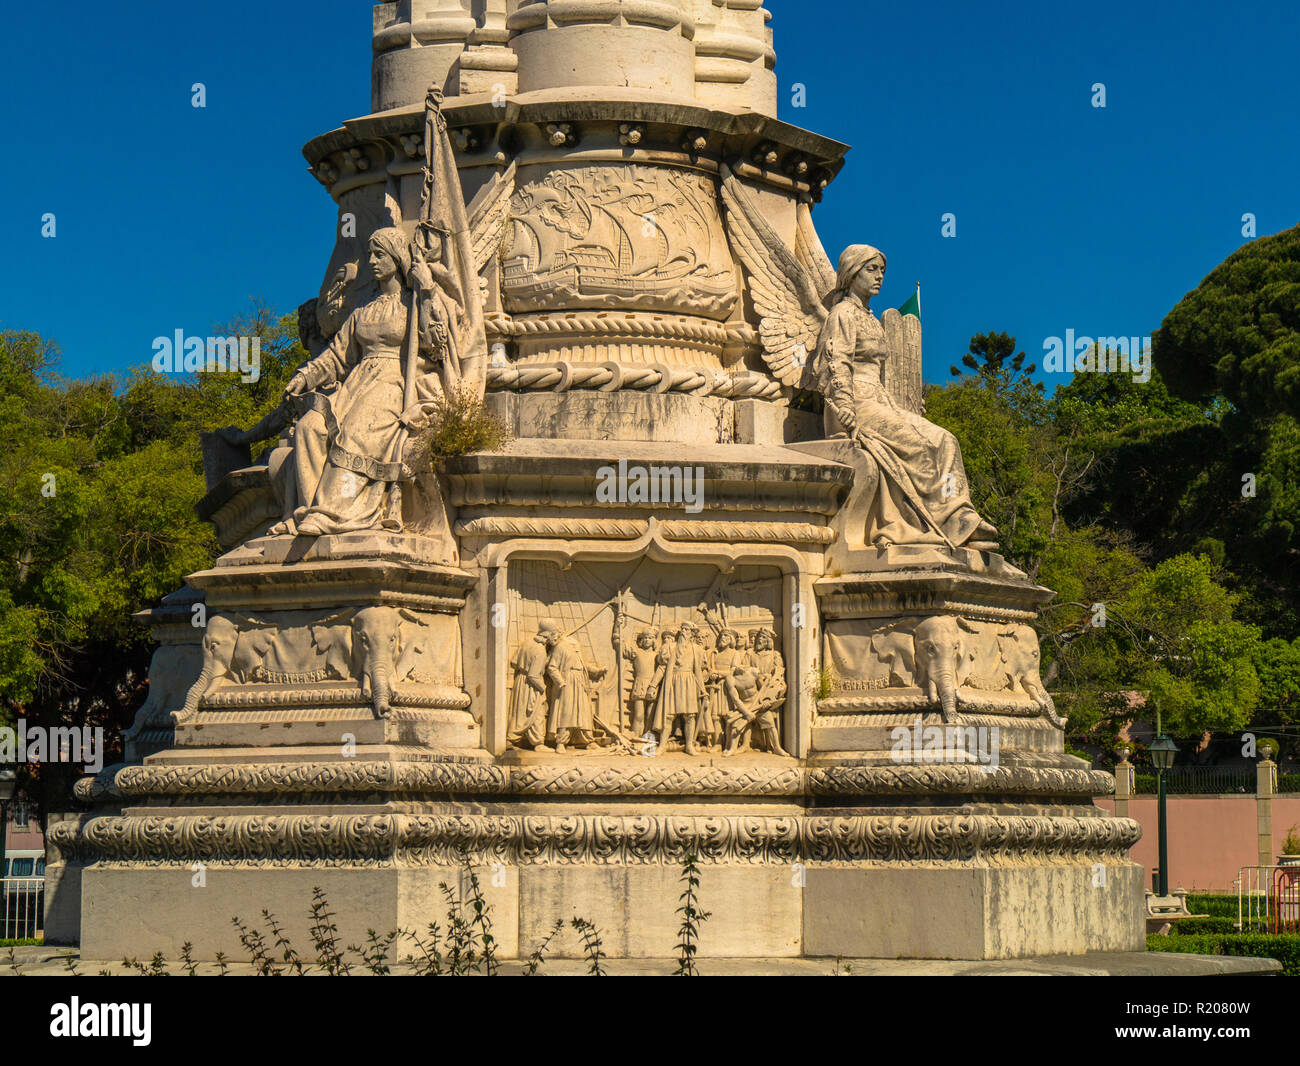 Albuquerque monument in the Garden of Alfonso de Albuquerque,Lisbon,Portugal,Europe Stock Photo